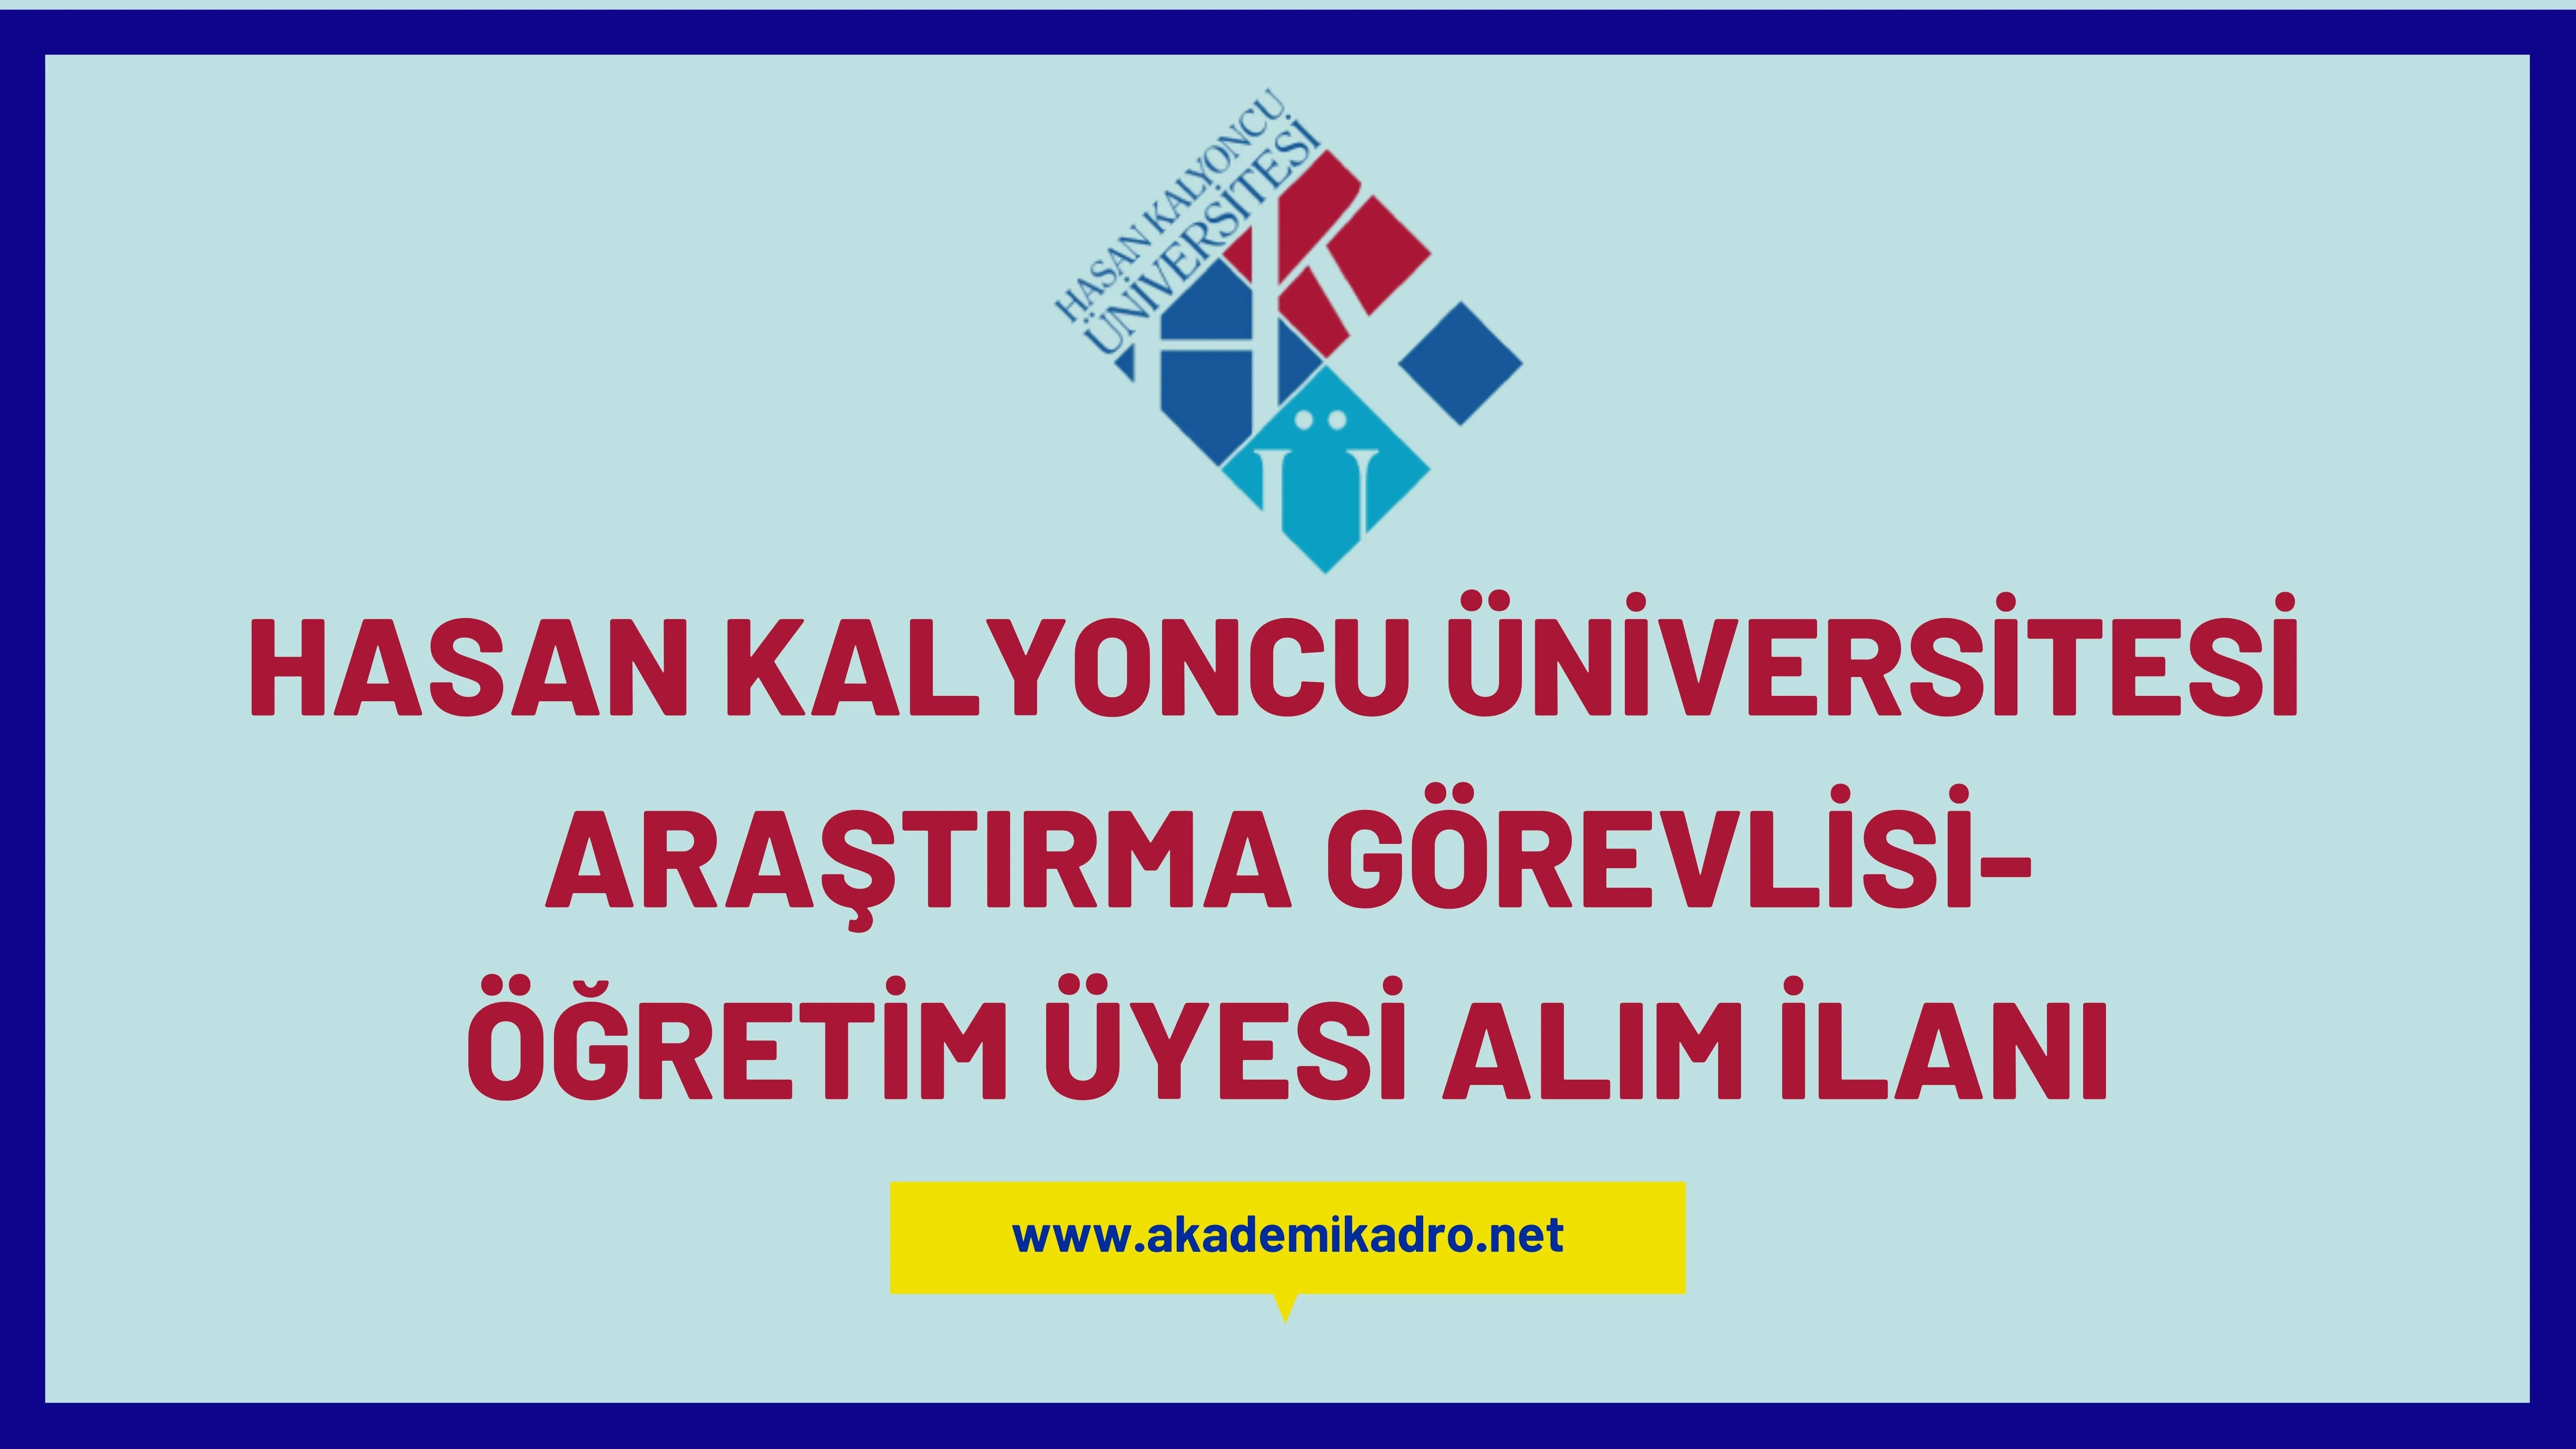 Hasan Kalyoncu Üniversitesi Araştırma görevlisi ve  Öğretim üyesi olmak üzere 30 Öğretim elemanı alacak.